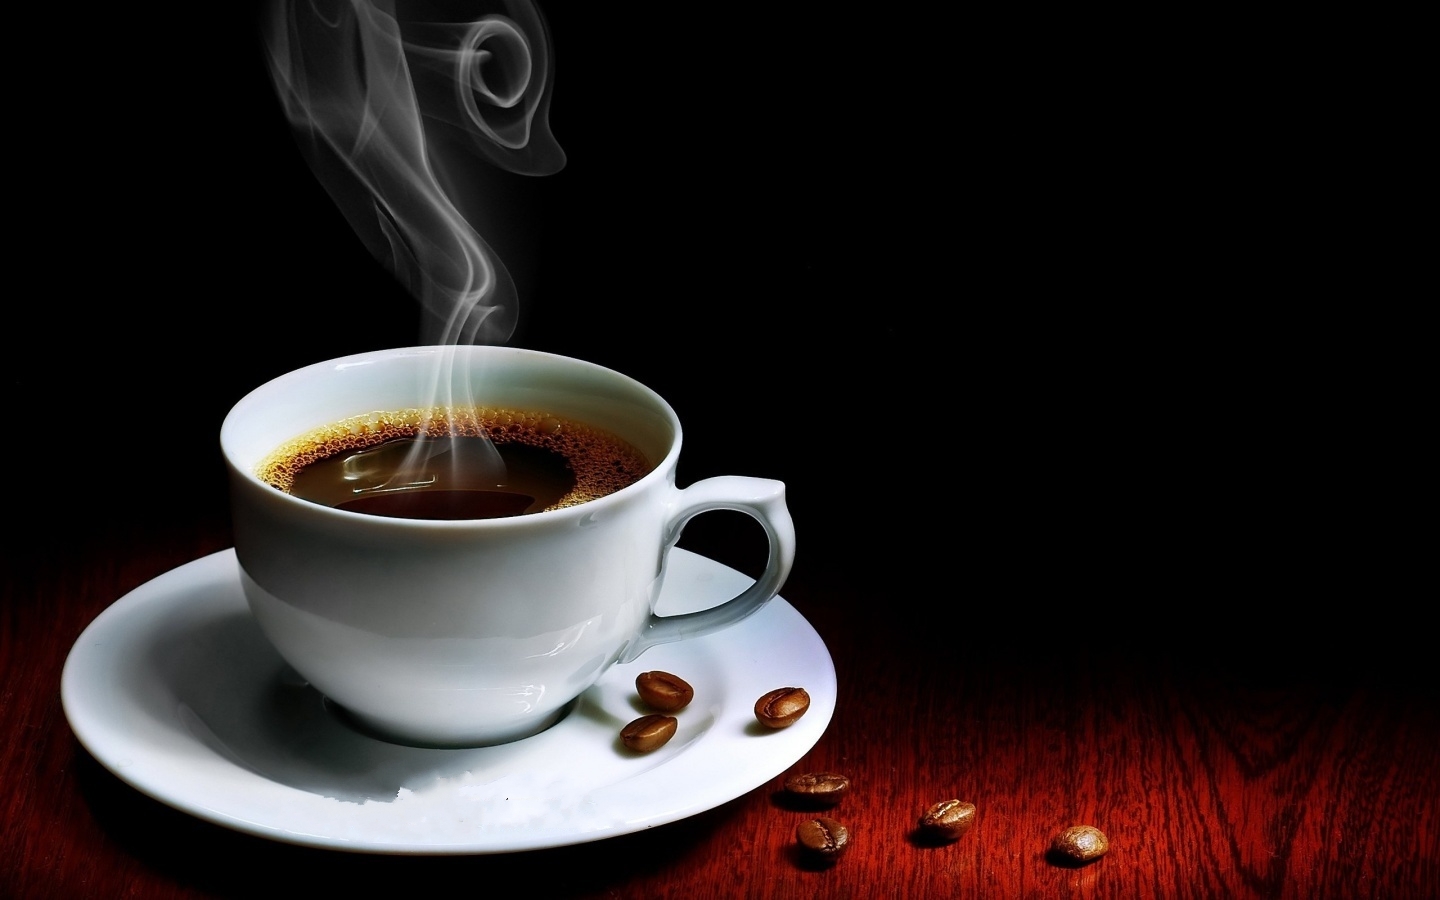 Cà phê chồn có hương vị đặc biệt